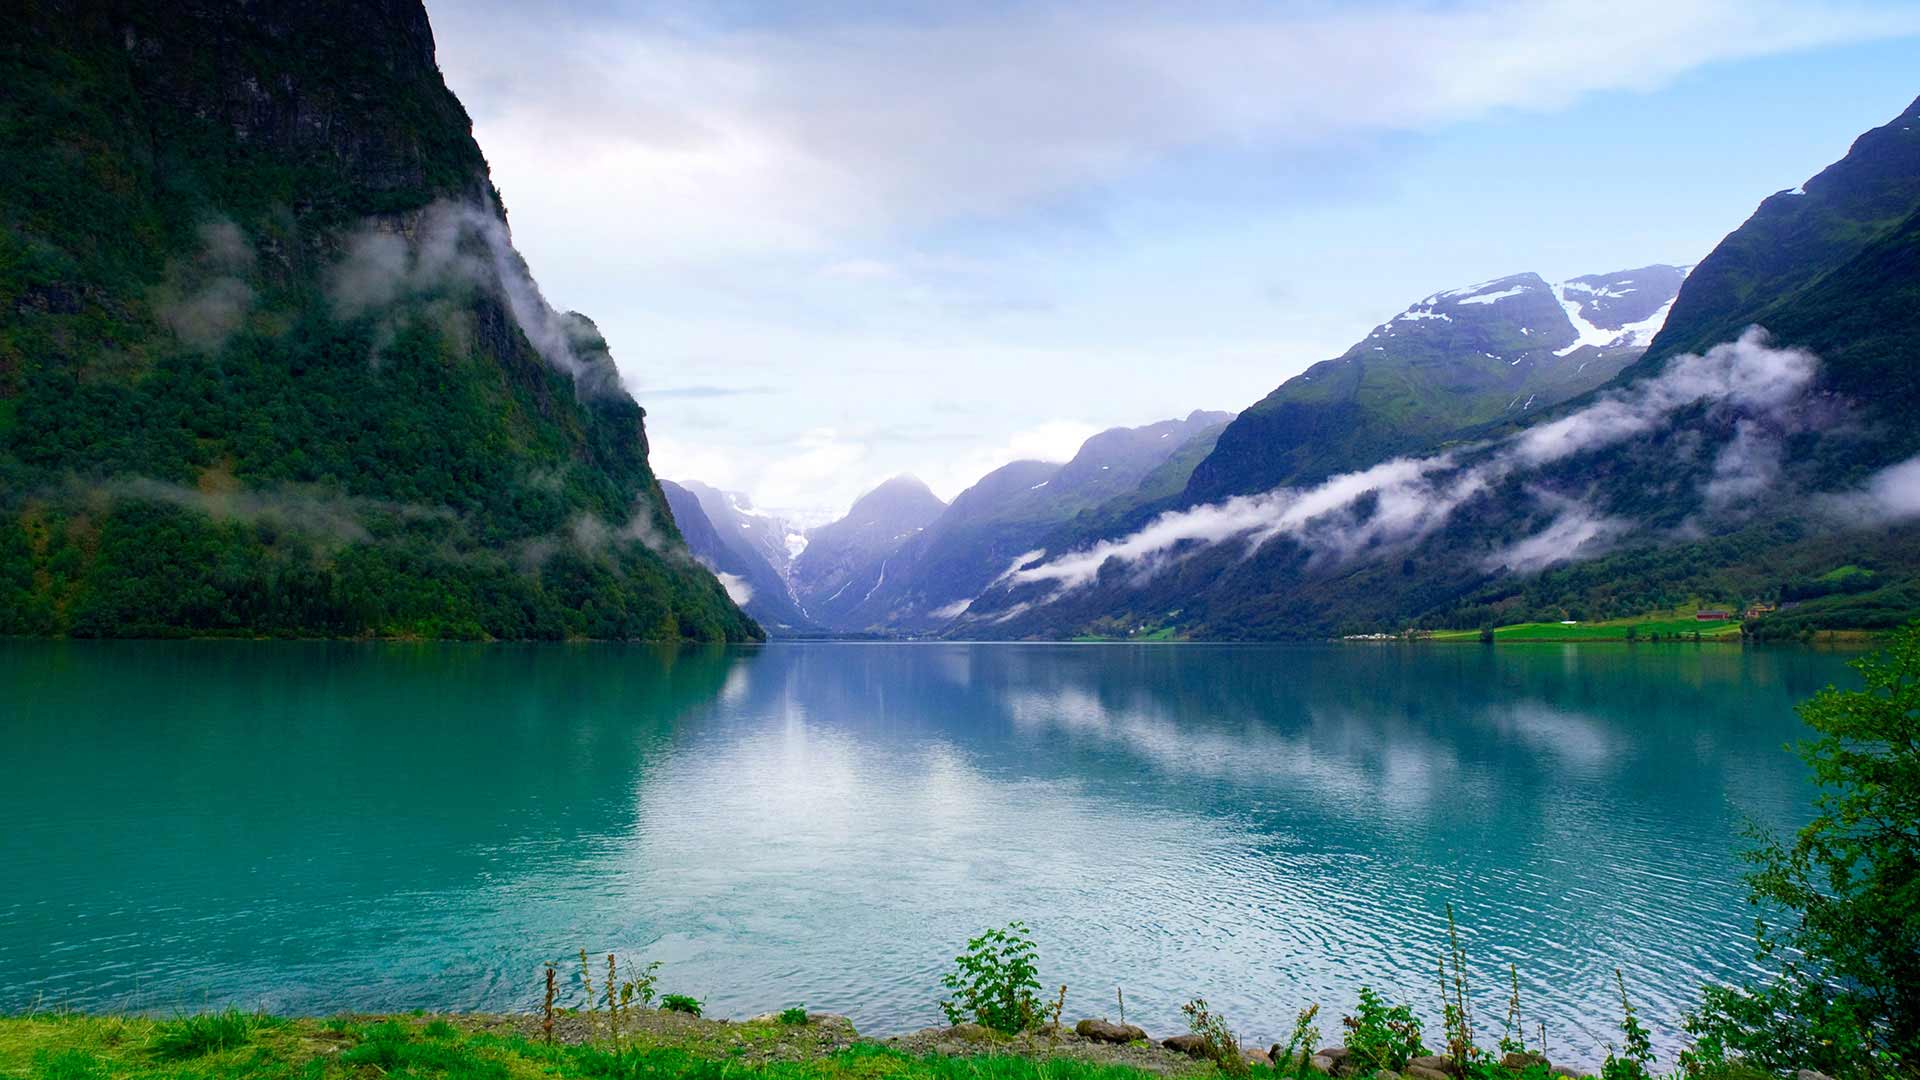 Hellesylt, Geirangerfjord in Norway